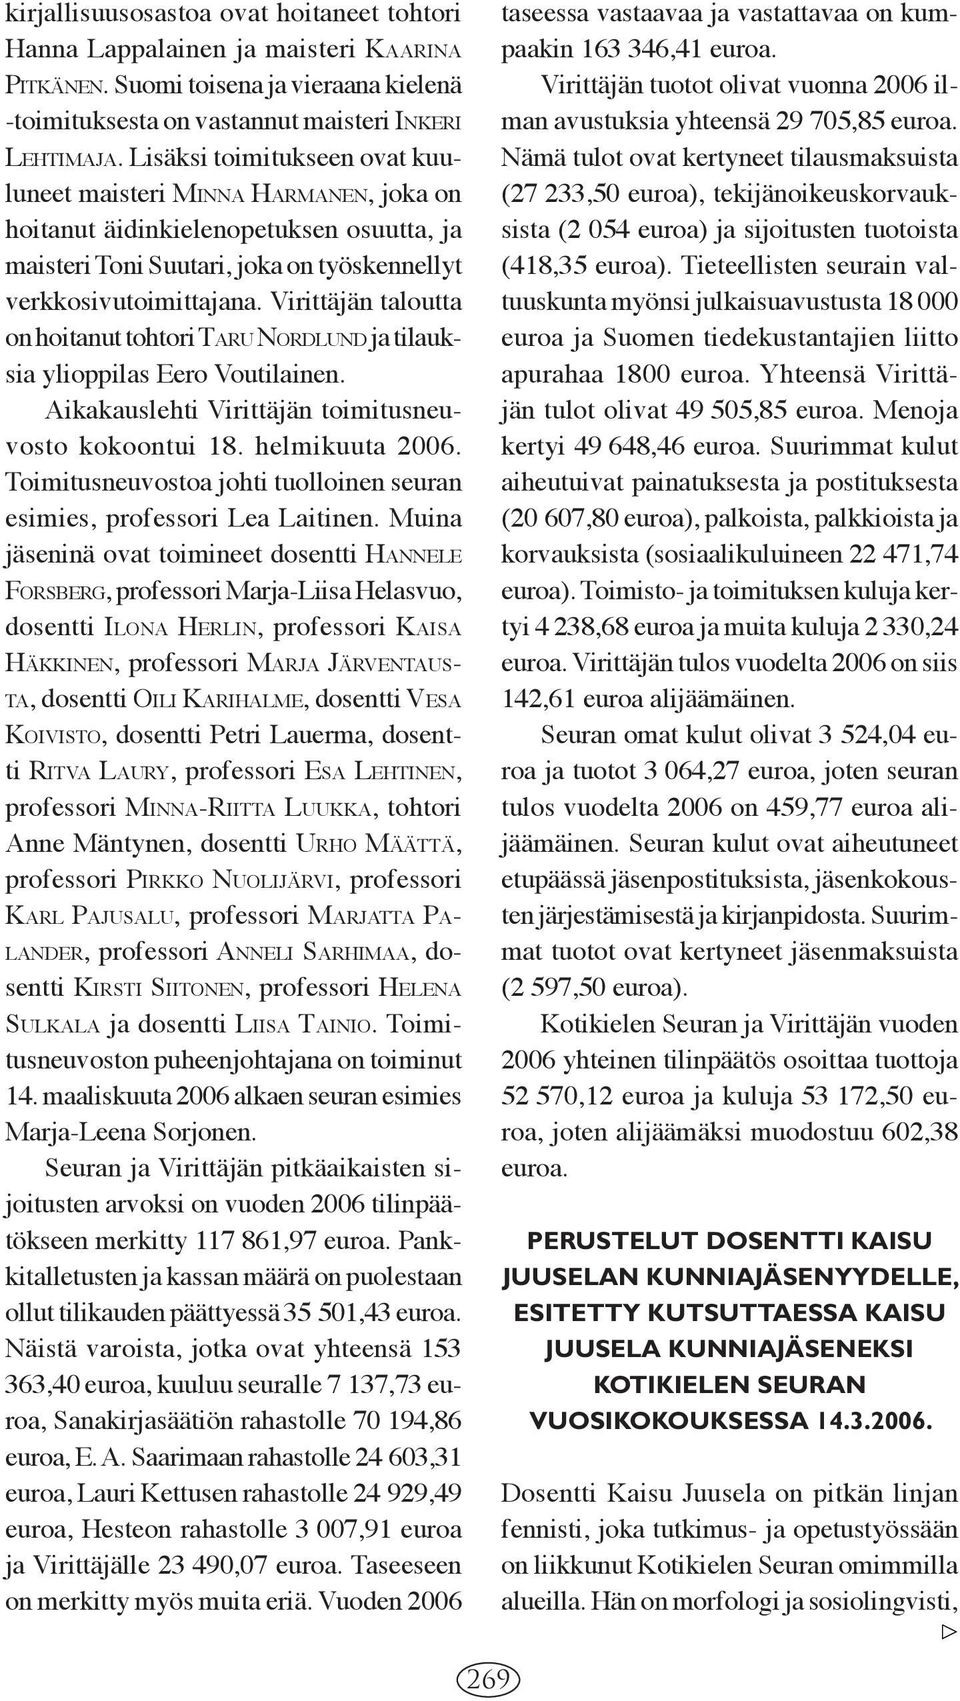 Virittäjän taloutta on hoitanut tohtori TARU NORD LUND ja tilauksia ylioppilas Eero Voutilainen. Aikakauslehti Virittäjän toimitusneuvosto kokoontui 18. helmikuuta 2006.